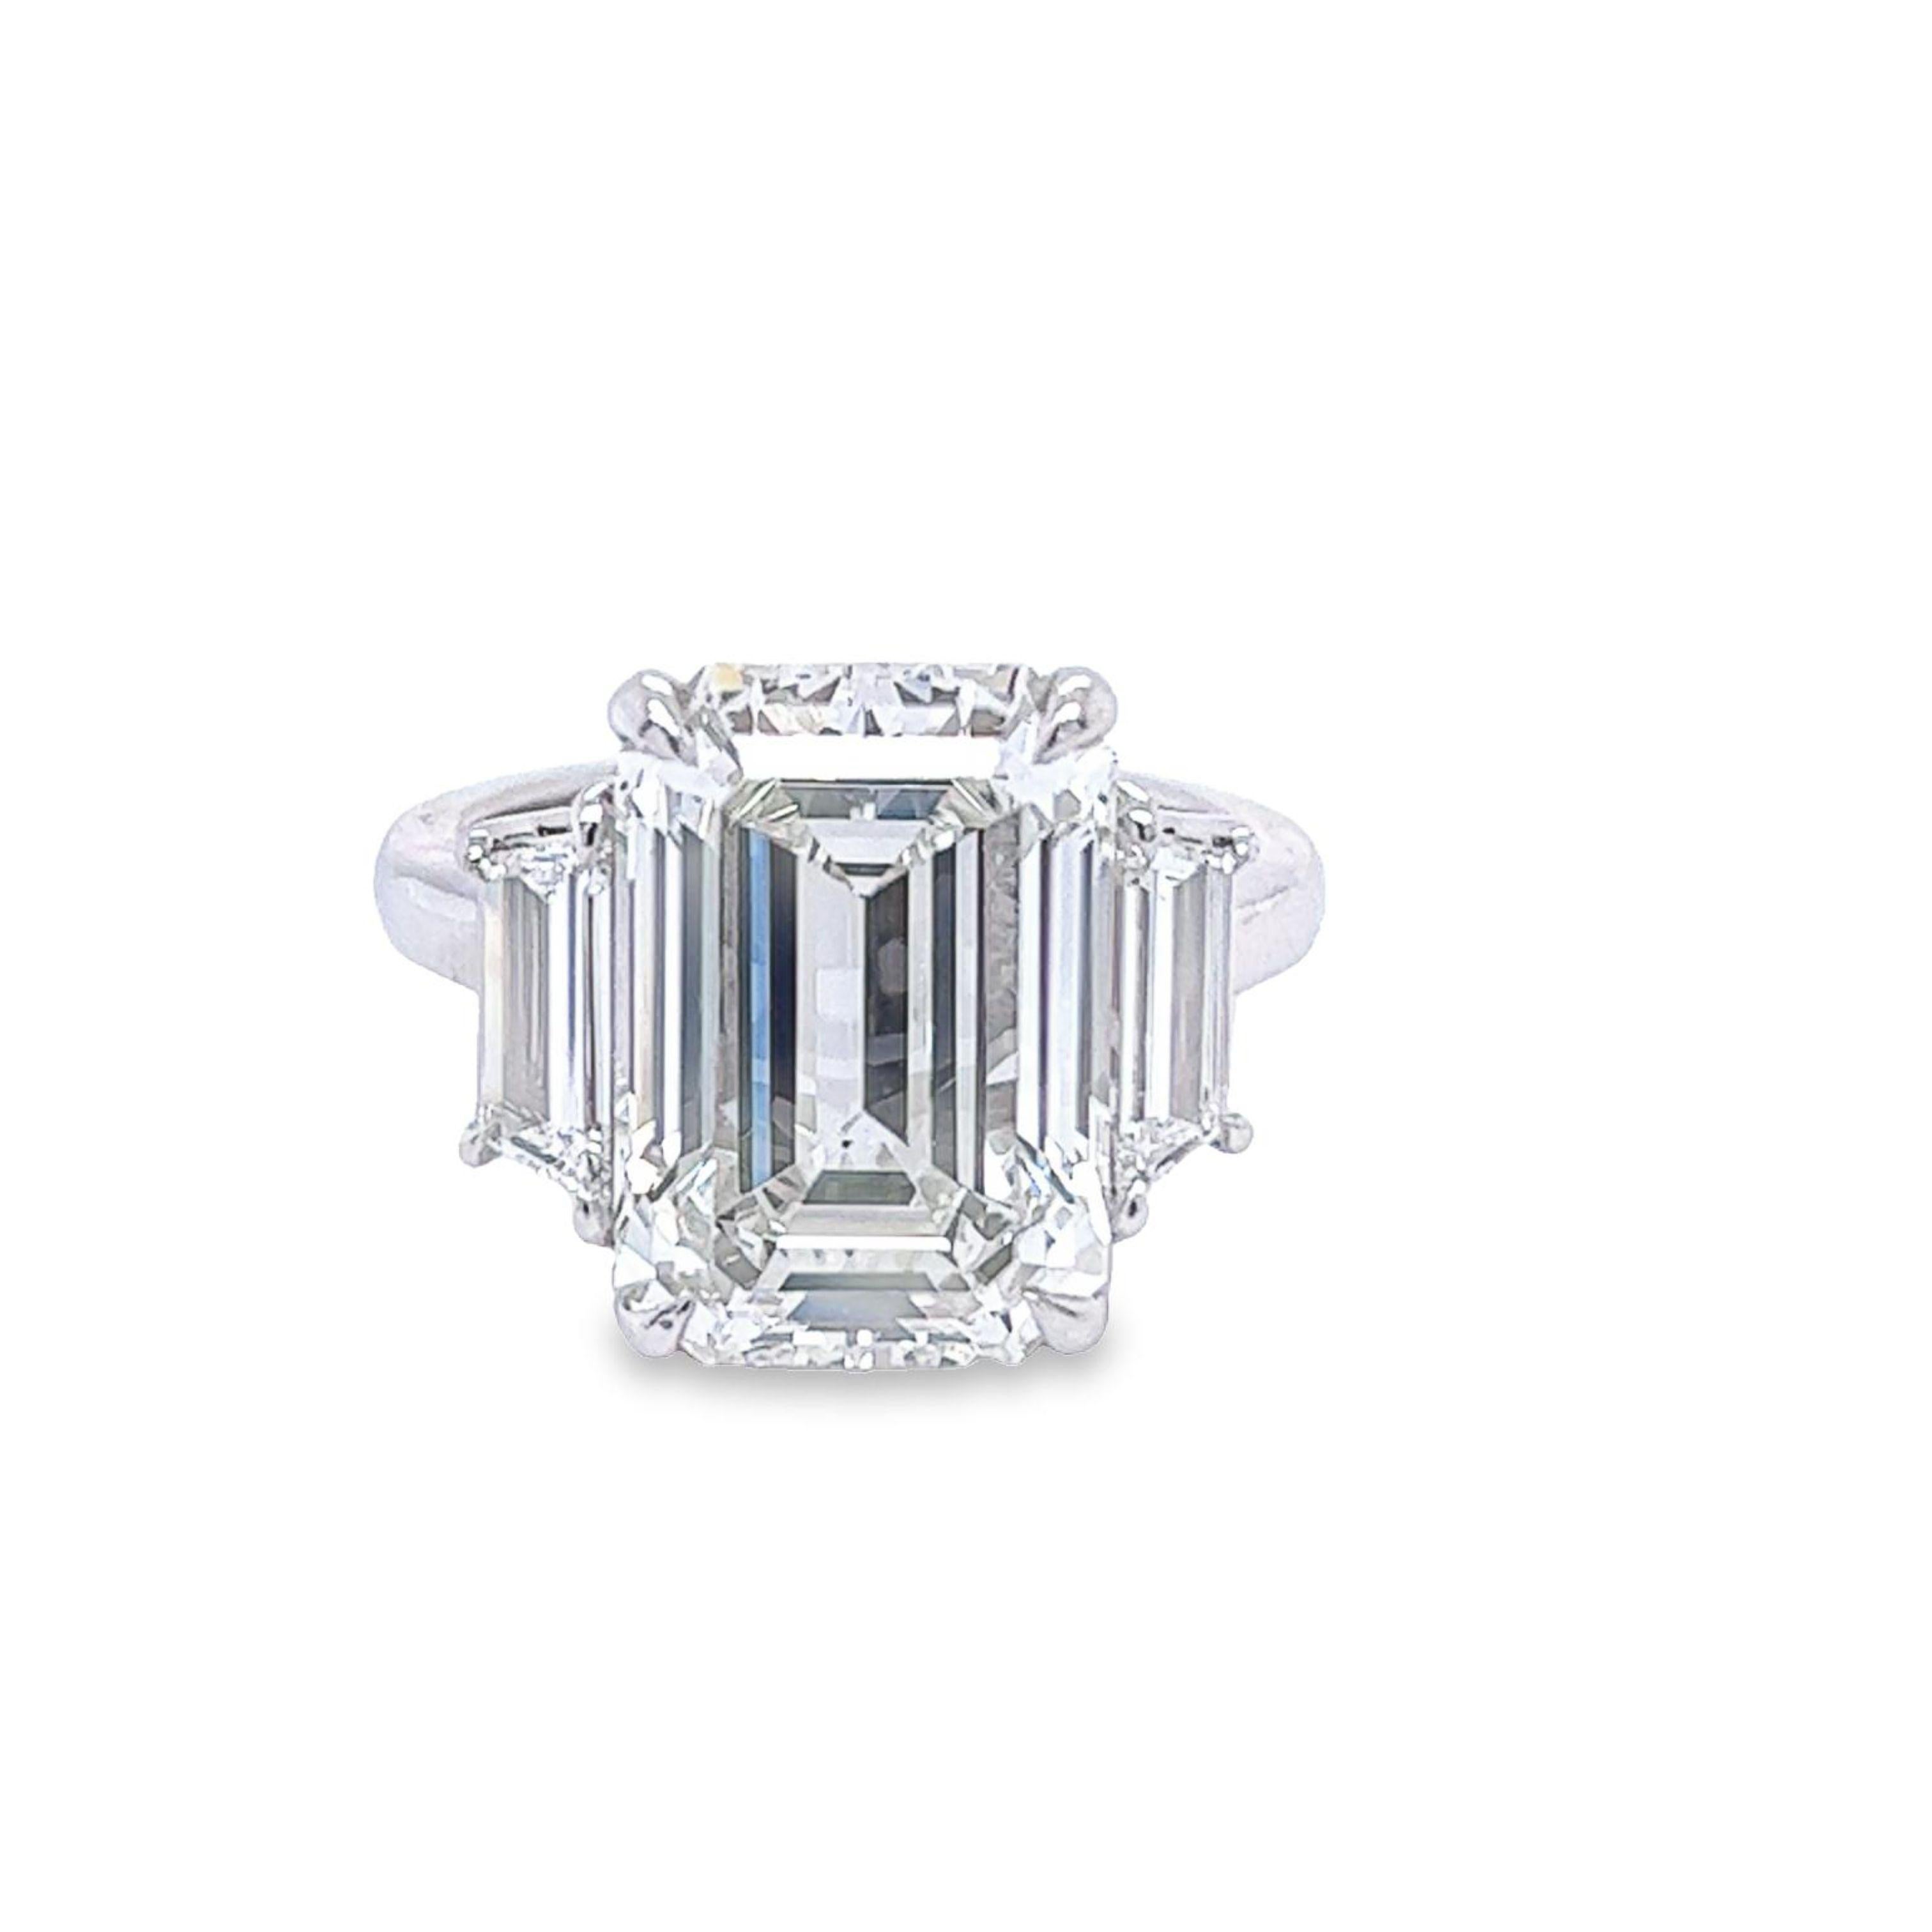 Rosenberg Diamonds and Co. Émeraude de 8,37 carats de taille I couleur VS1 clarté est accompagnée d'un certificat GIA. Cette magnifique émeraude est sertie dans une monture en platine faite à la main avec une paire parfaitement assortie de pierres